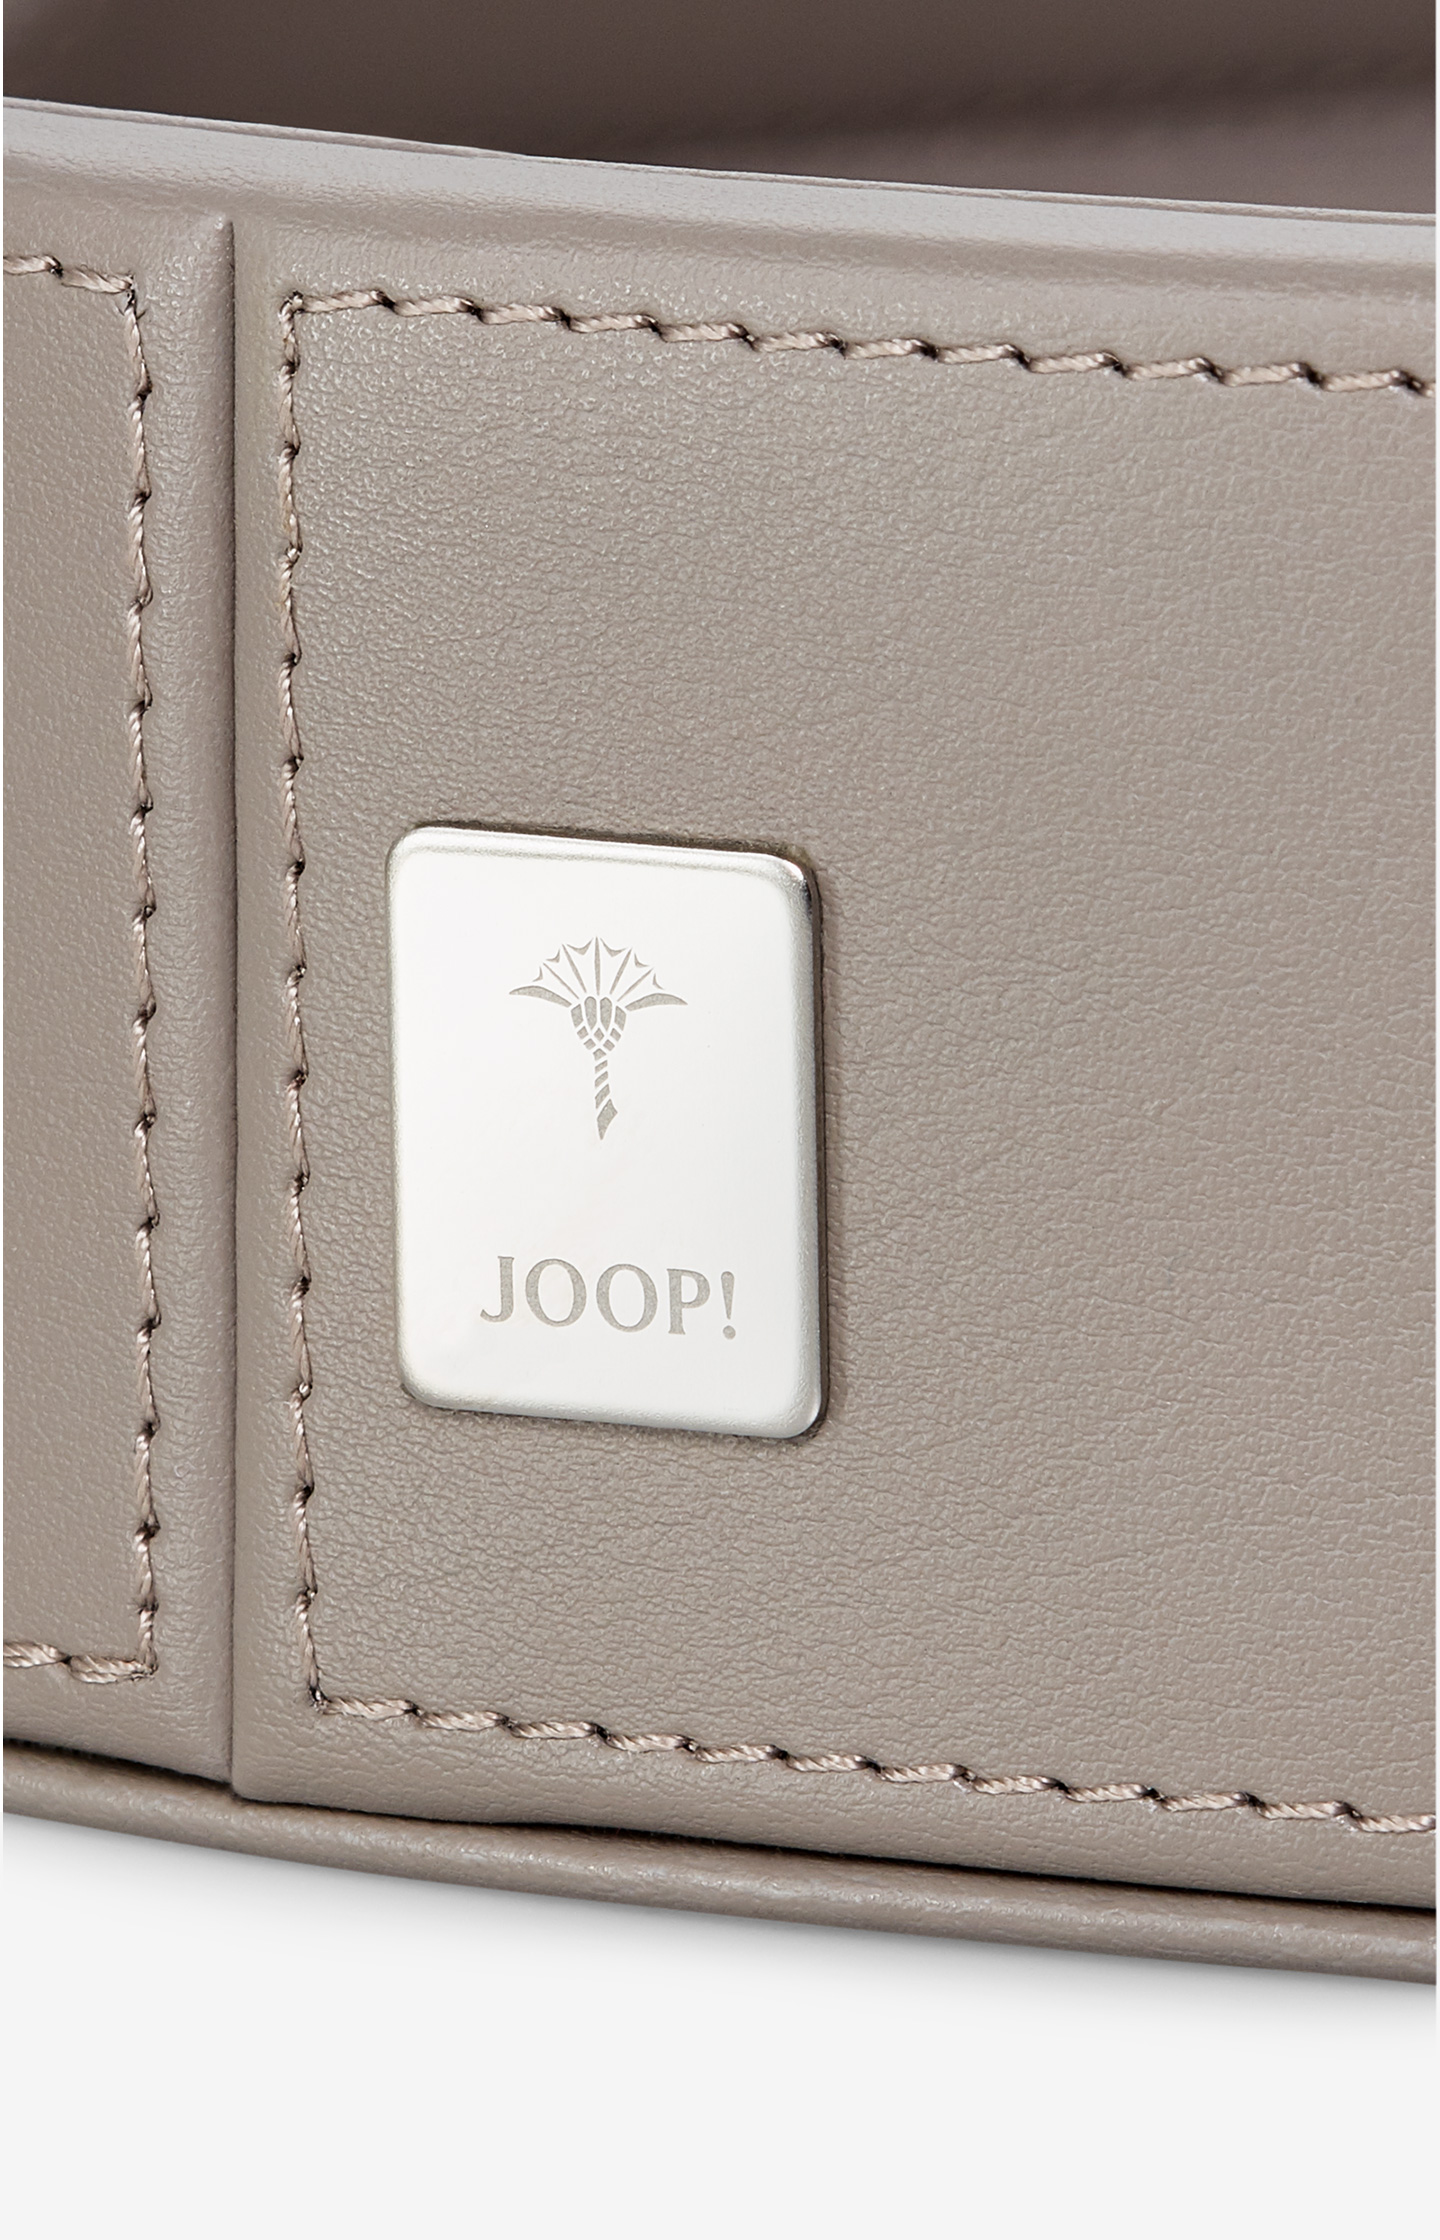 JOOP! Homeline - Rundes Tablett in Grau, klein - im JOOP! Online-Shop